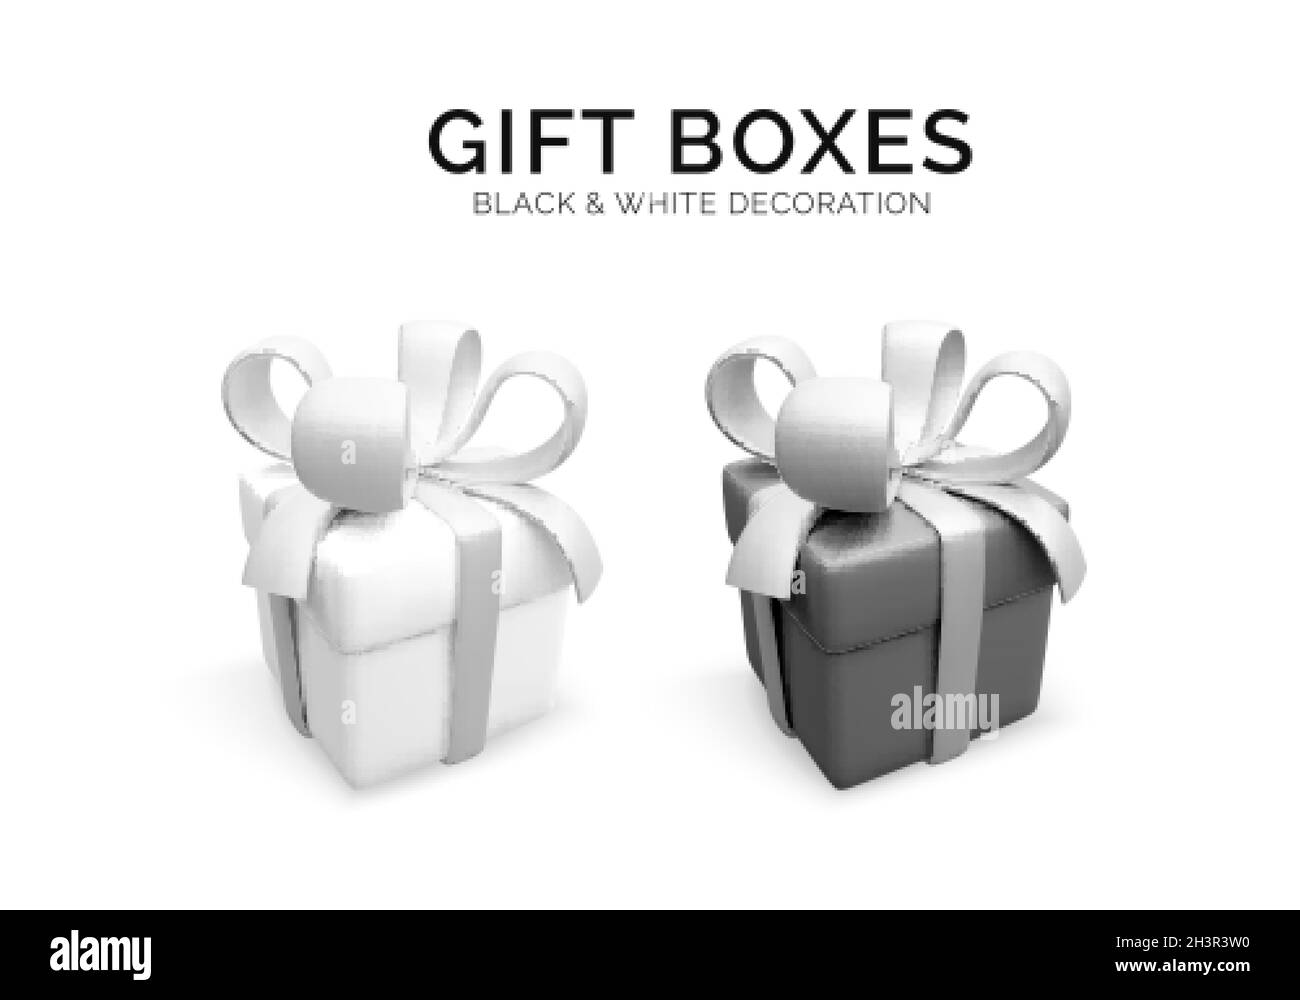 Realistische schwarz-weiße Geschenkbox. 3d Rendering Urlaub geschlossen Überraschungsbox mit Band. Handgefertigte Geschenk-Box. Vektorgrafik Stock Vektor